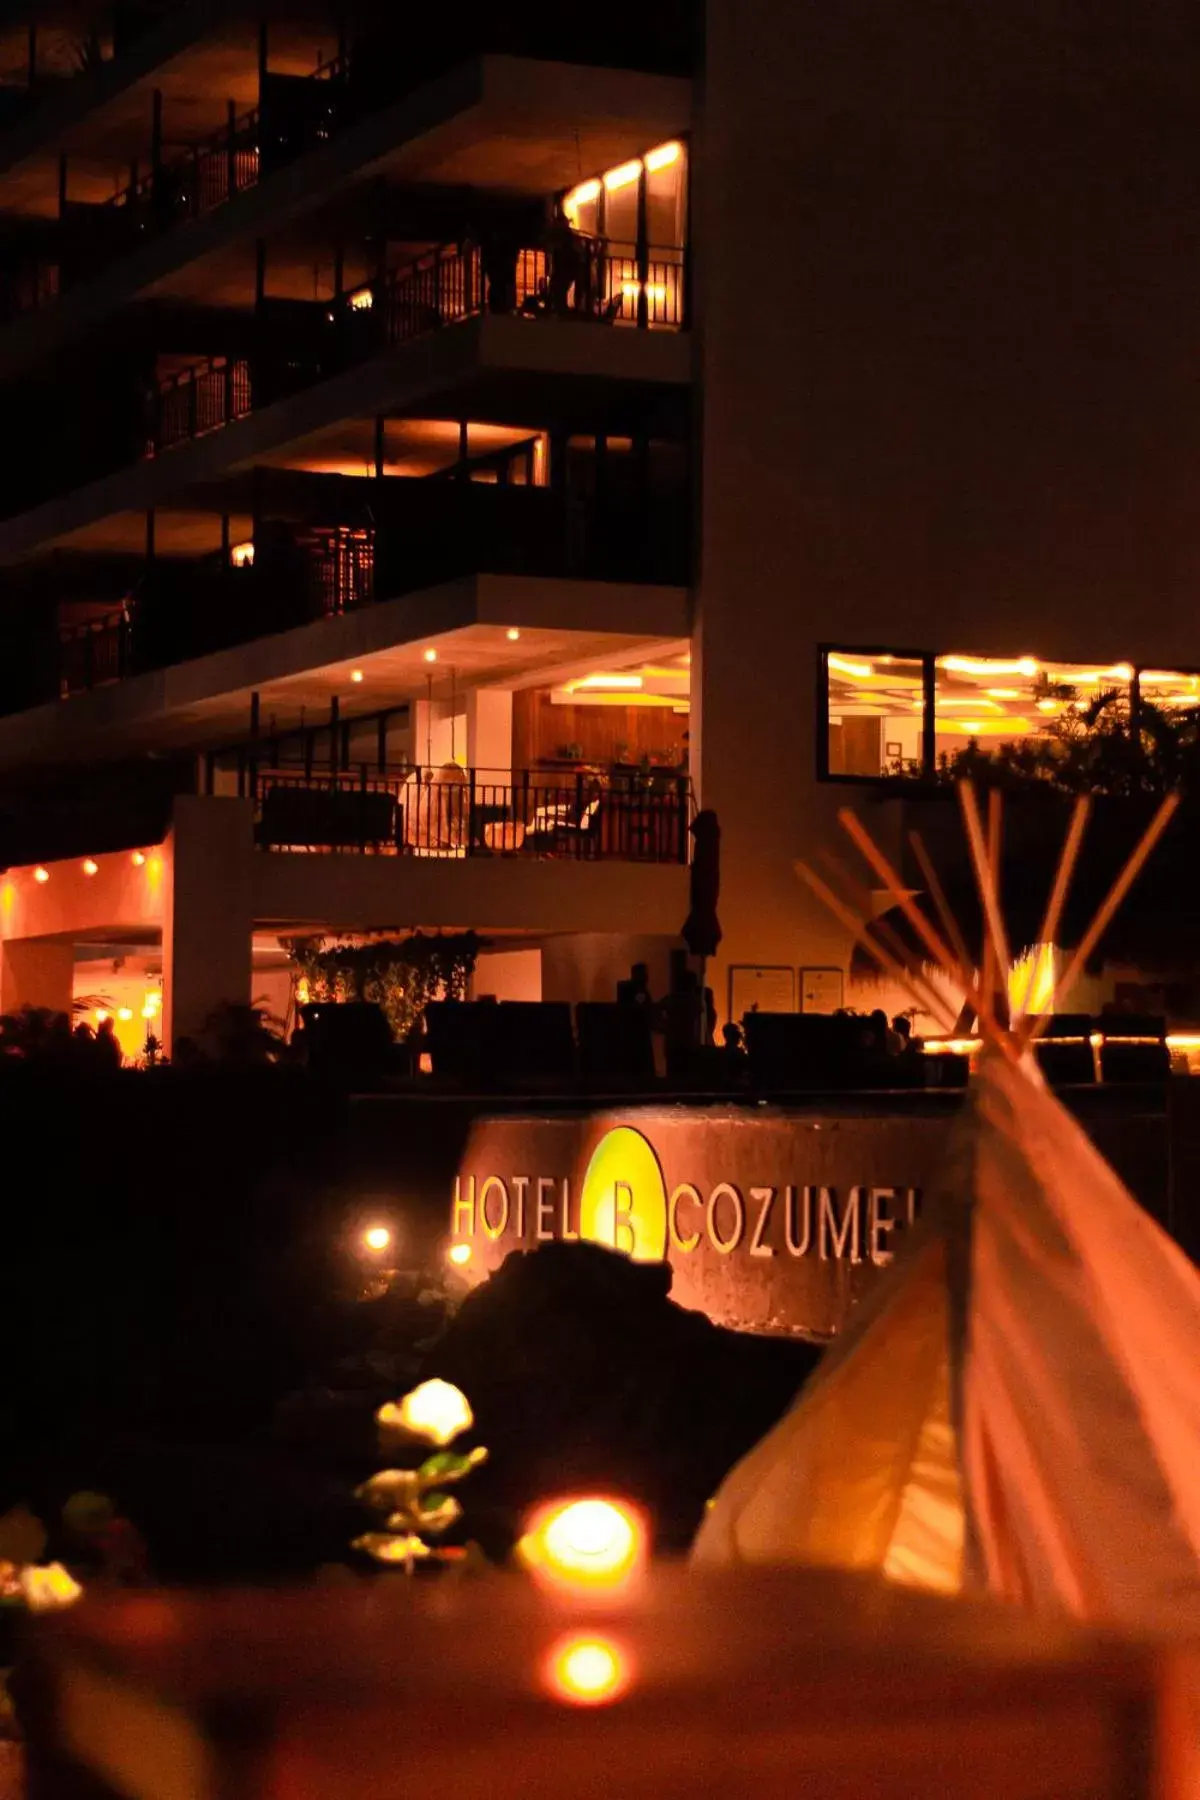 Night in Hotel B Cozumel